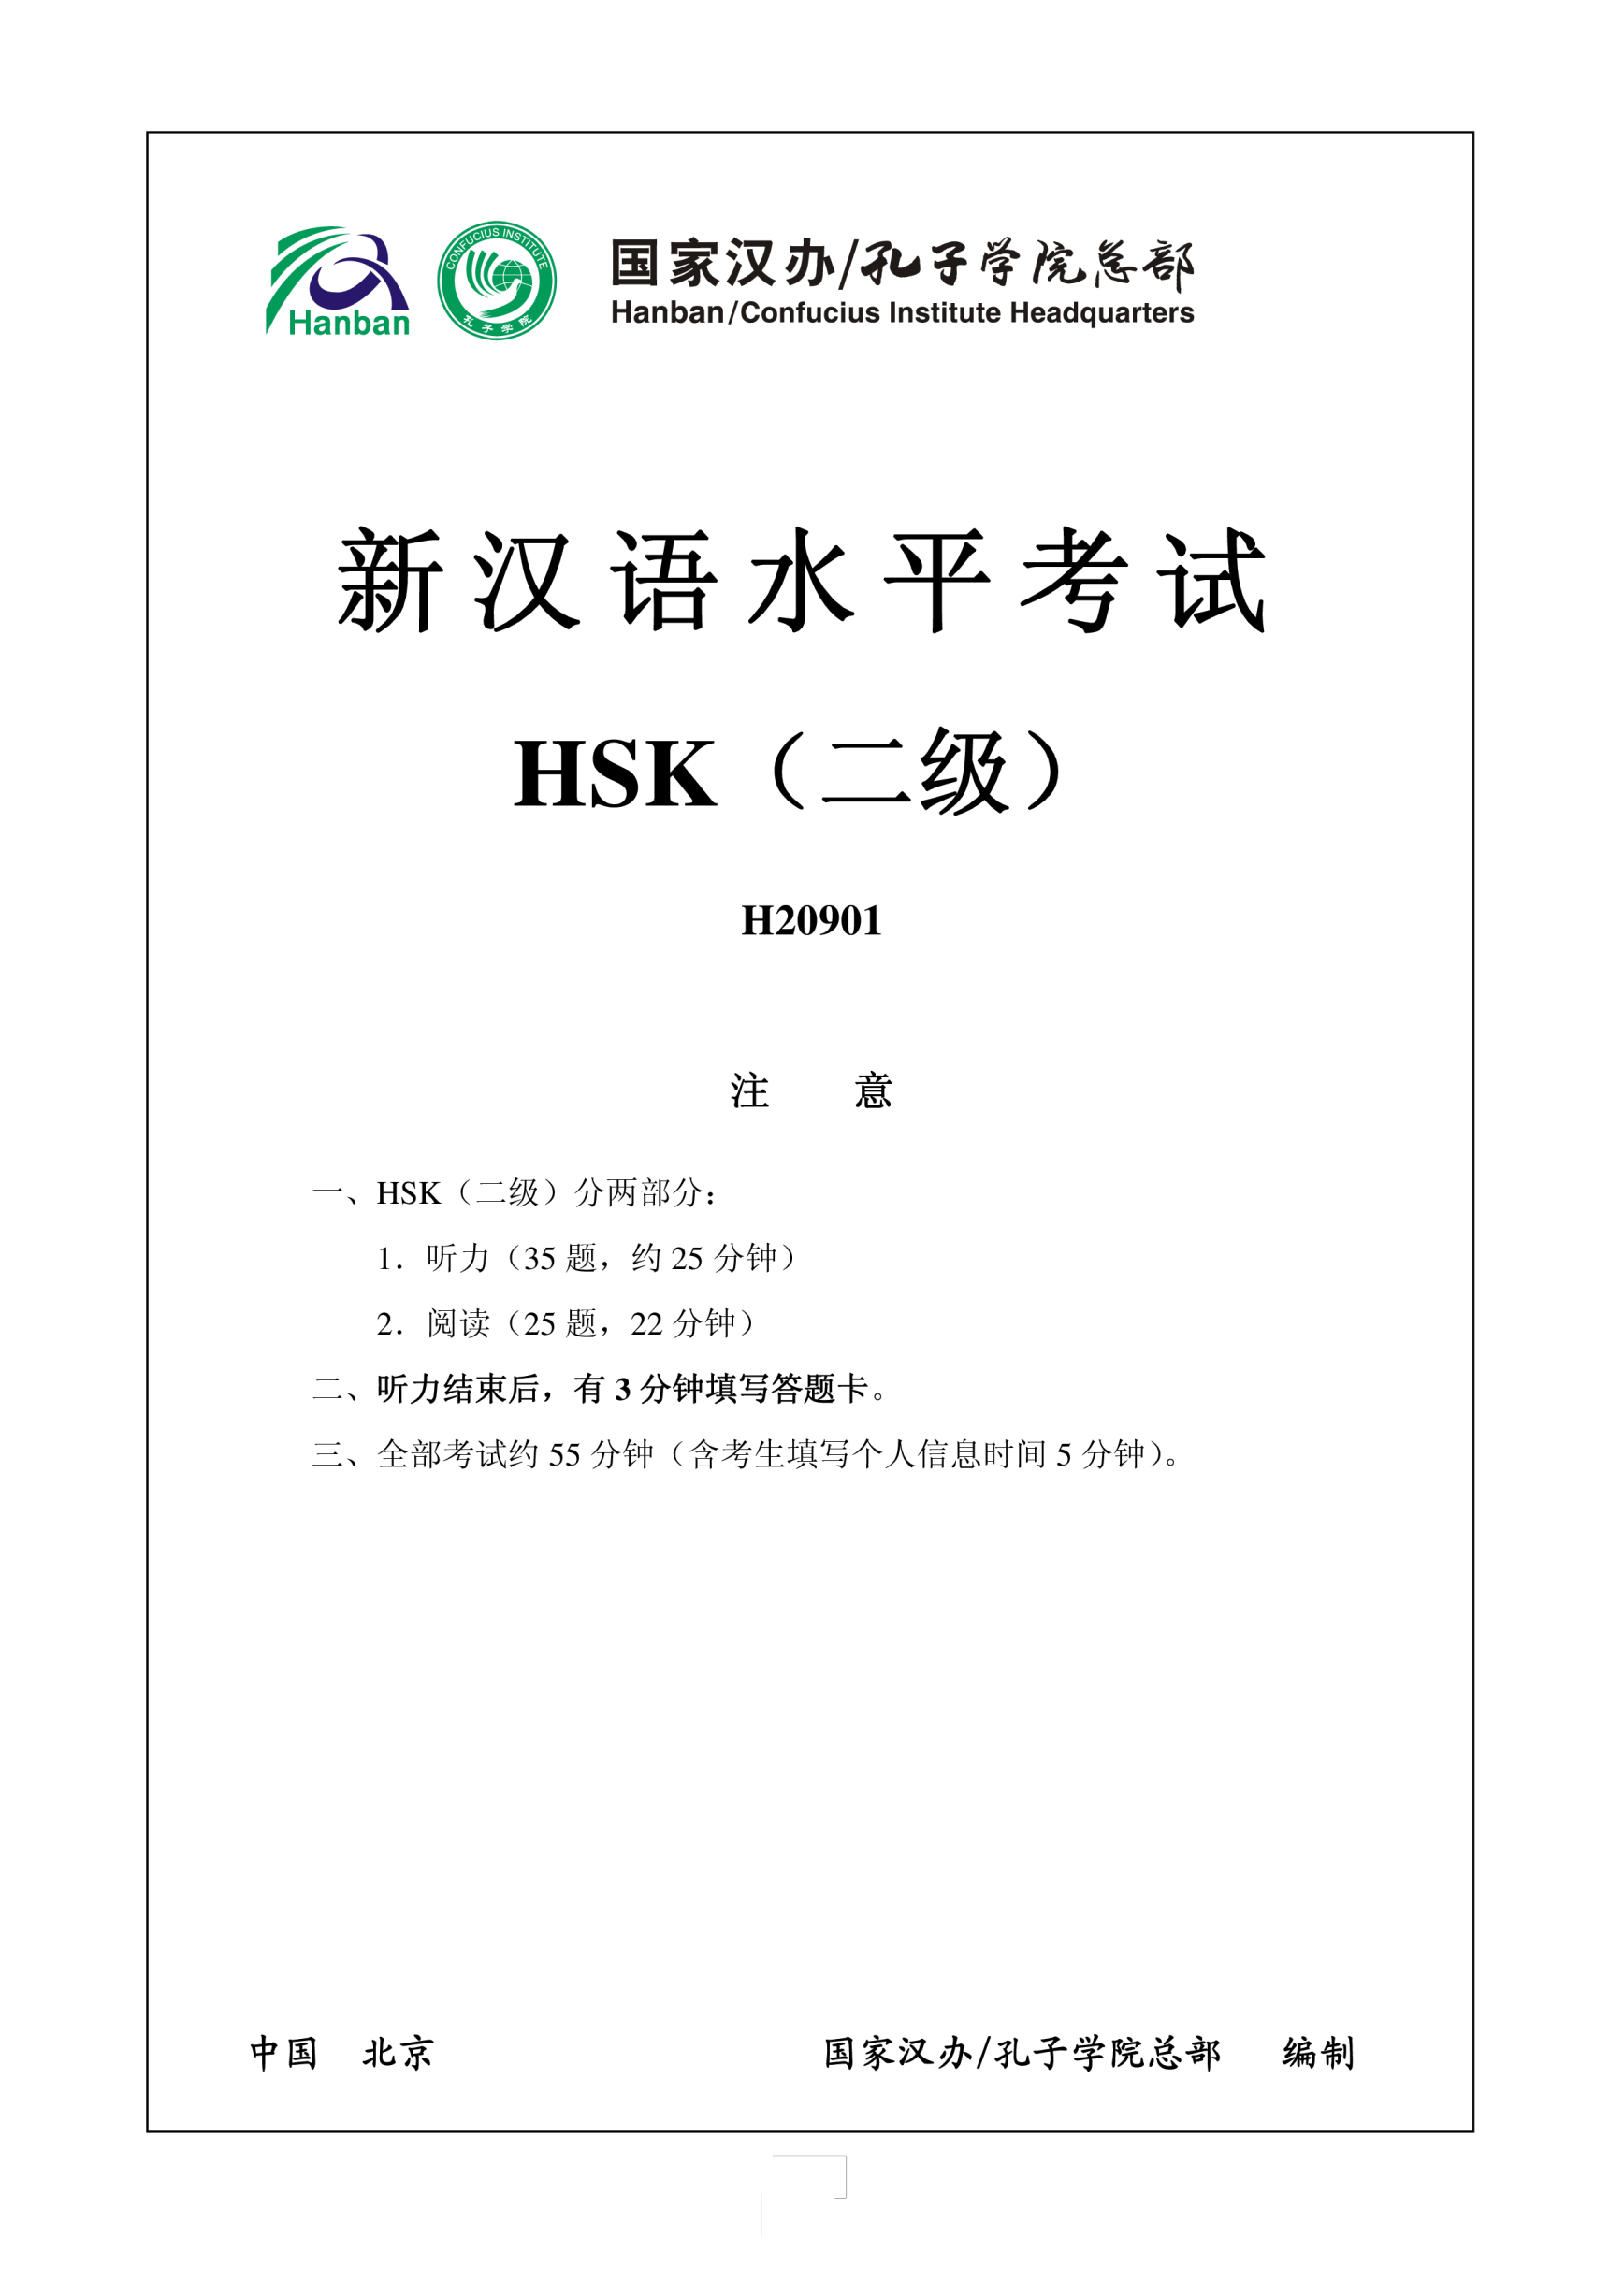 Vorschaubild der VorlageHSK2 Chinese Exam including Answers H20901